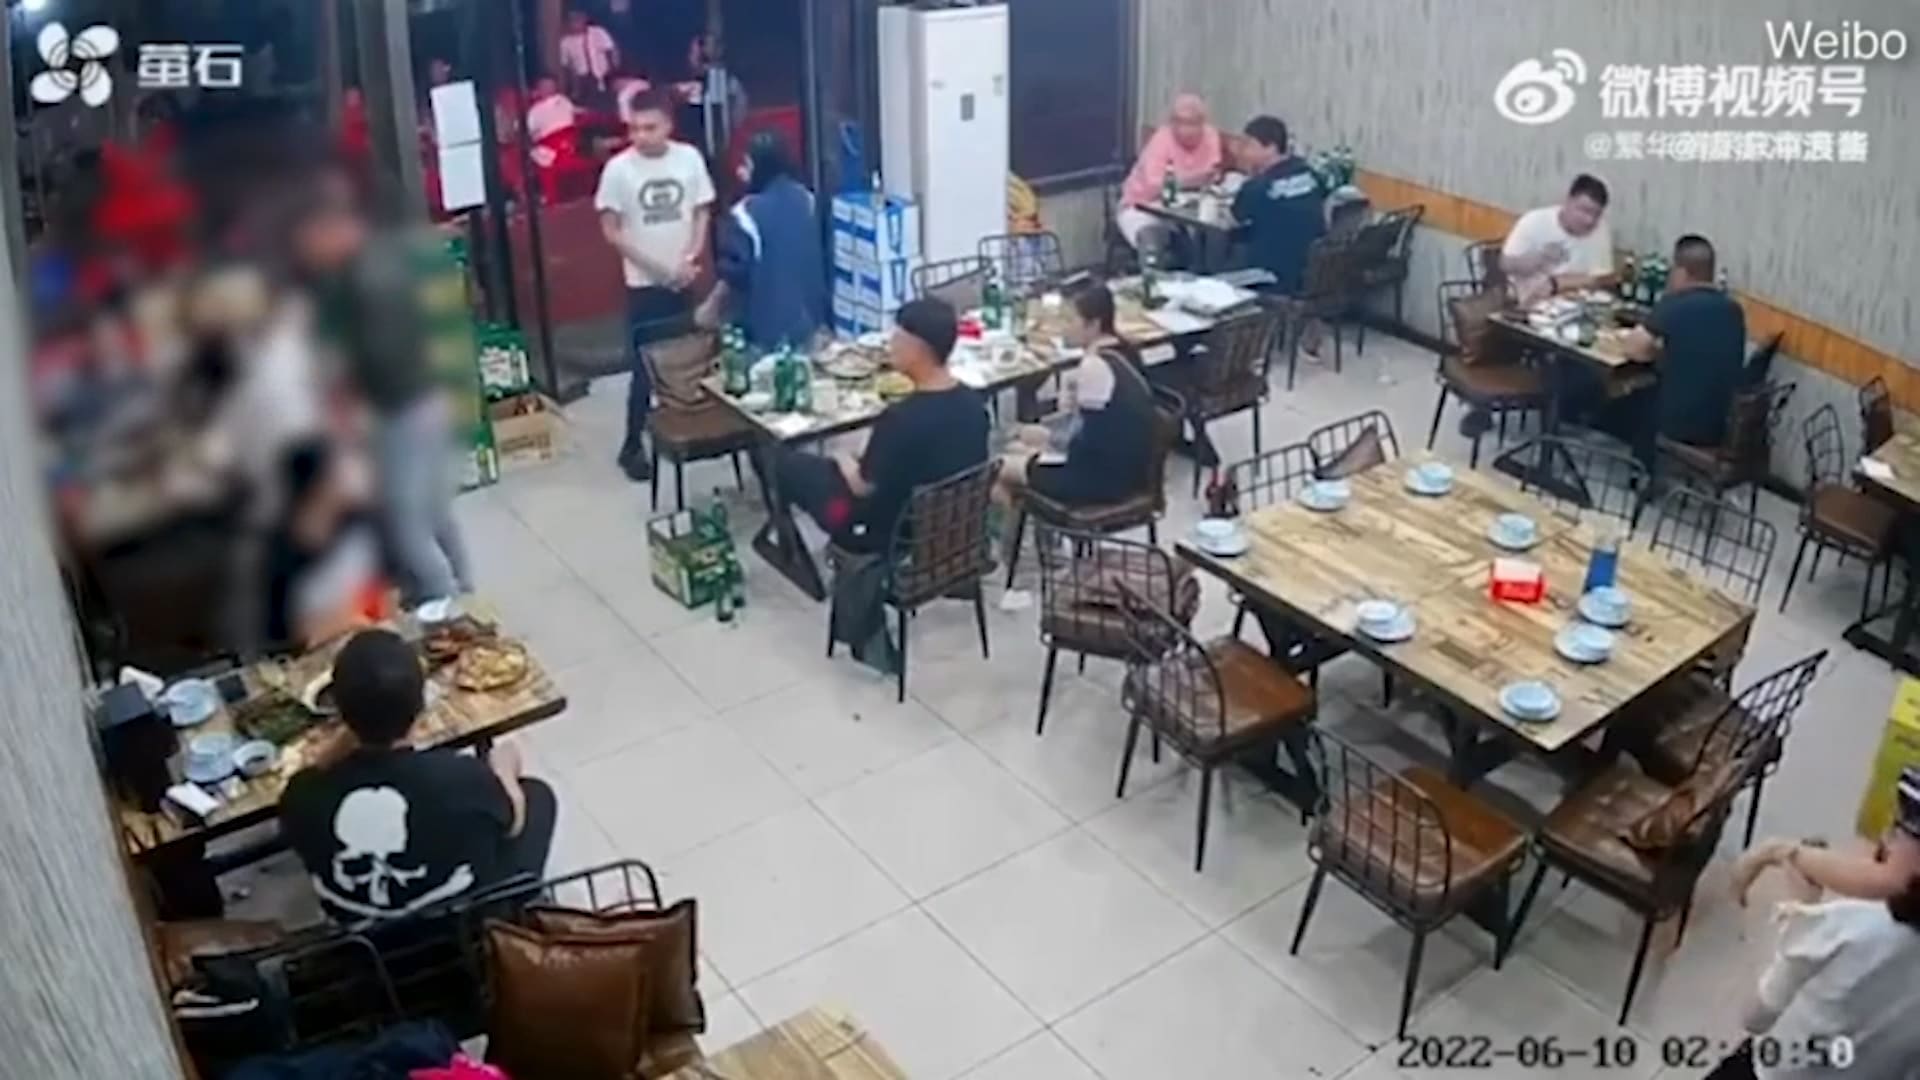 شاهد.. تناقل فيديو للحظة صفع رجل لامرأة على وجهها بالصين